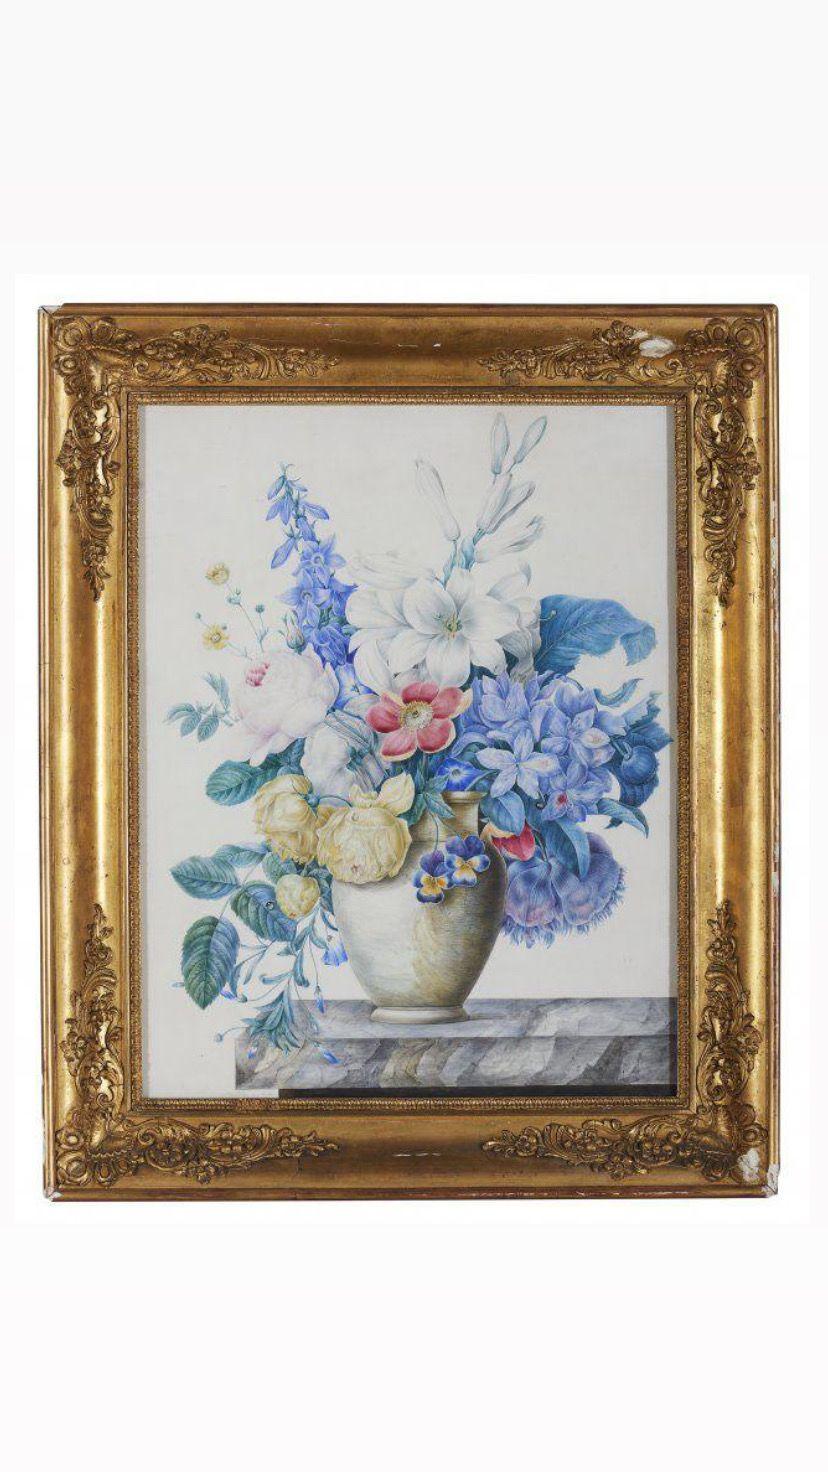 Aquarelle, die Blumen darstellen, sind eine beliebte und schöne Form der Kunst.

 Diese Künstlerin, Marie-Louise-Anne-Victoire de la Fouchardière, hat mit Aquarellfarben die zarte und lebendige Natur der Blumen eingefangen. Die durchscheinende und